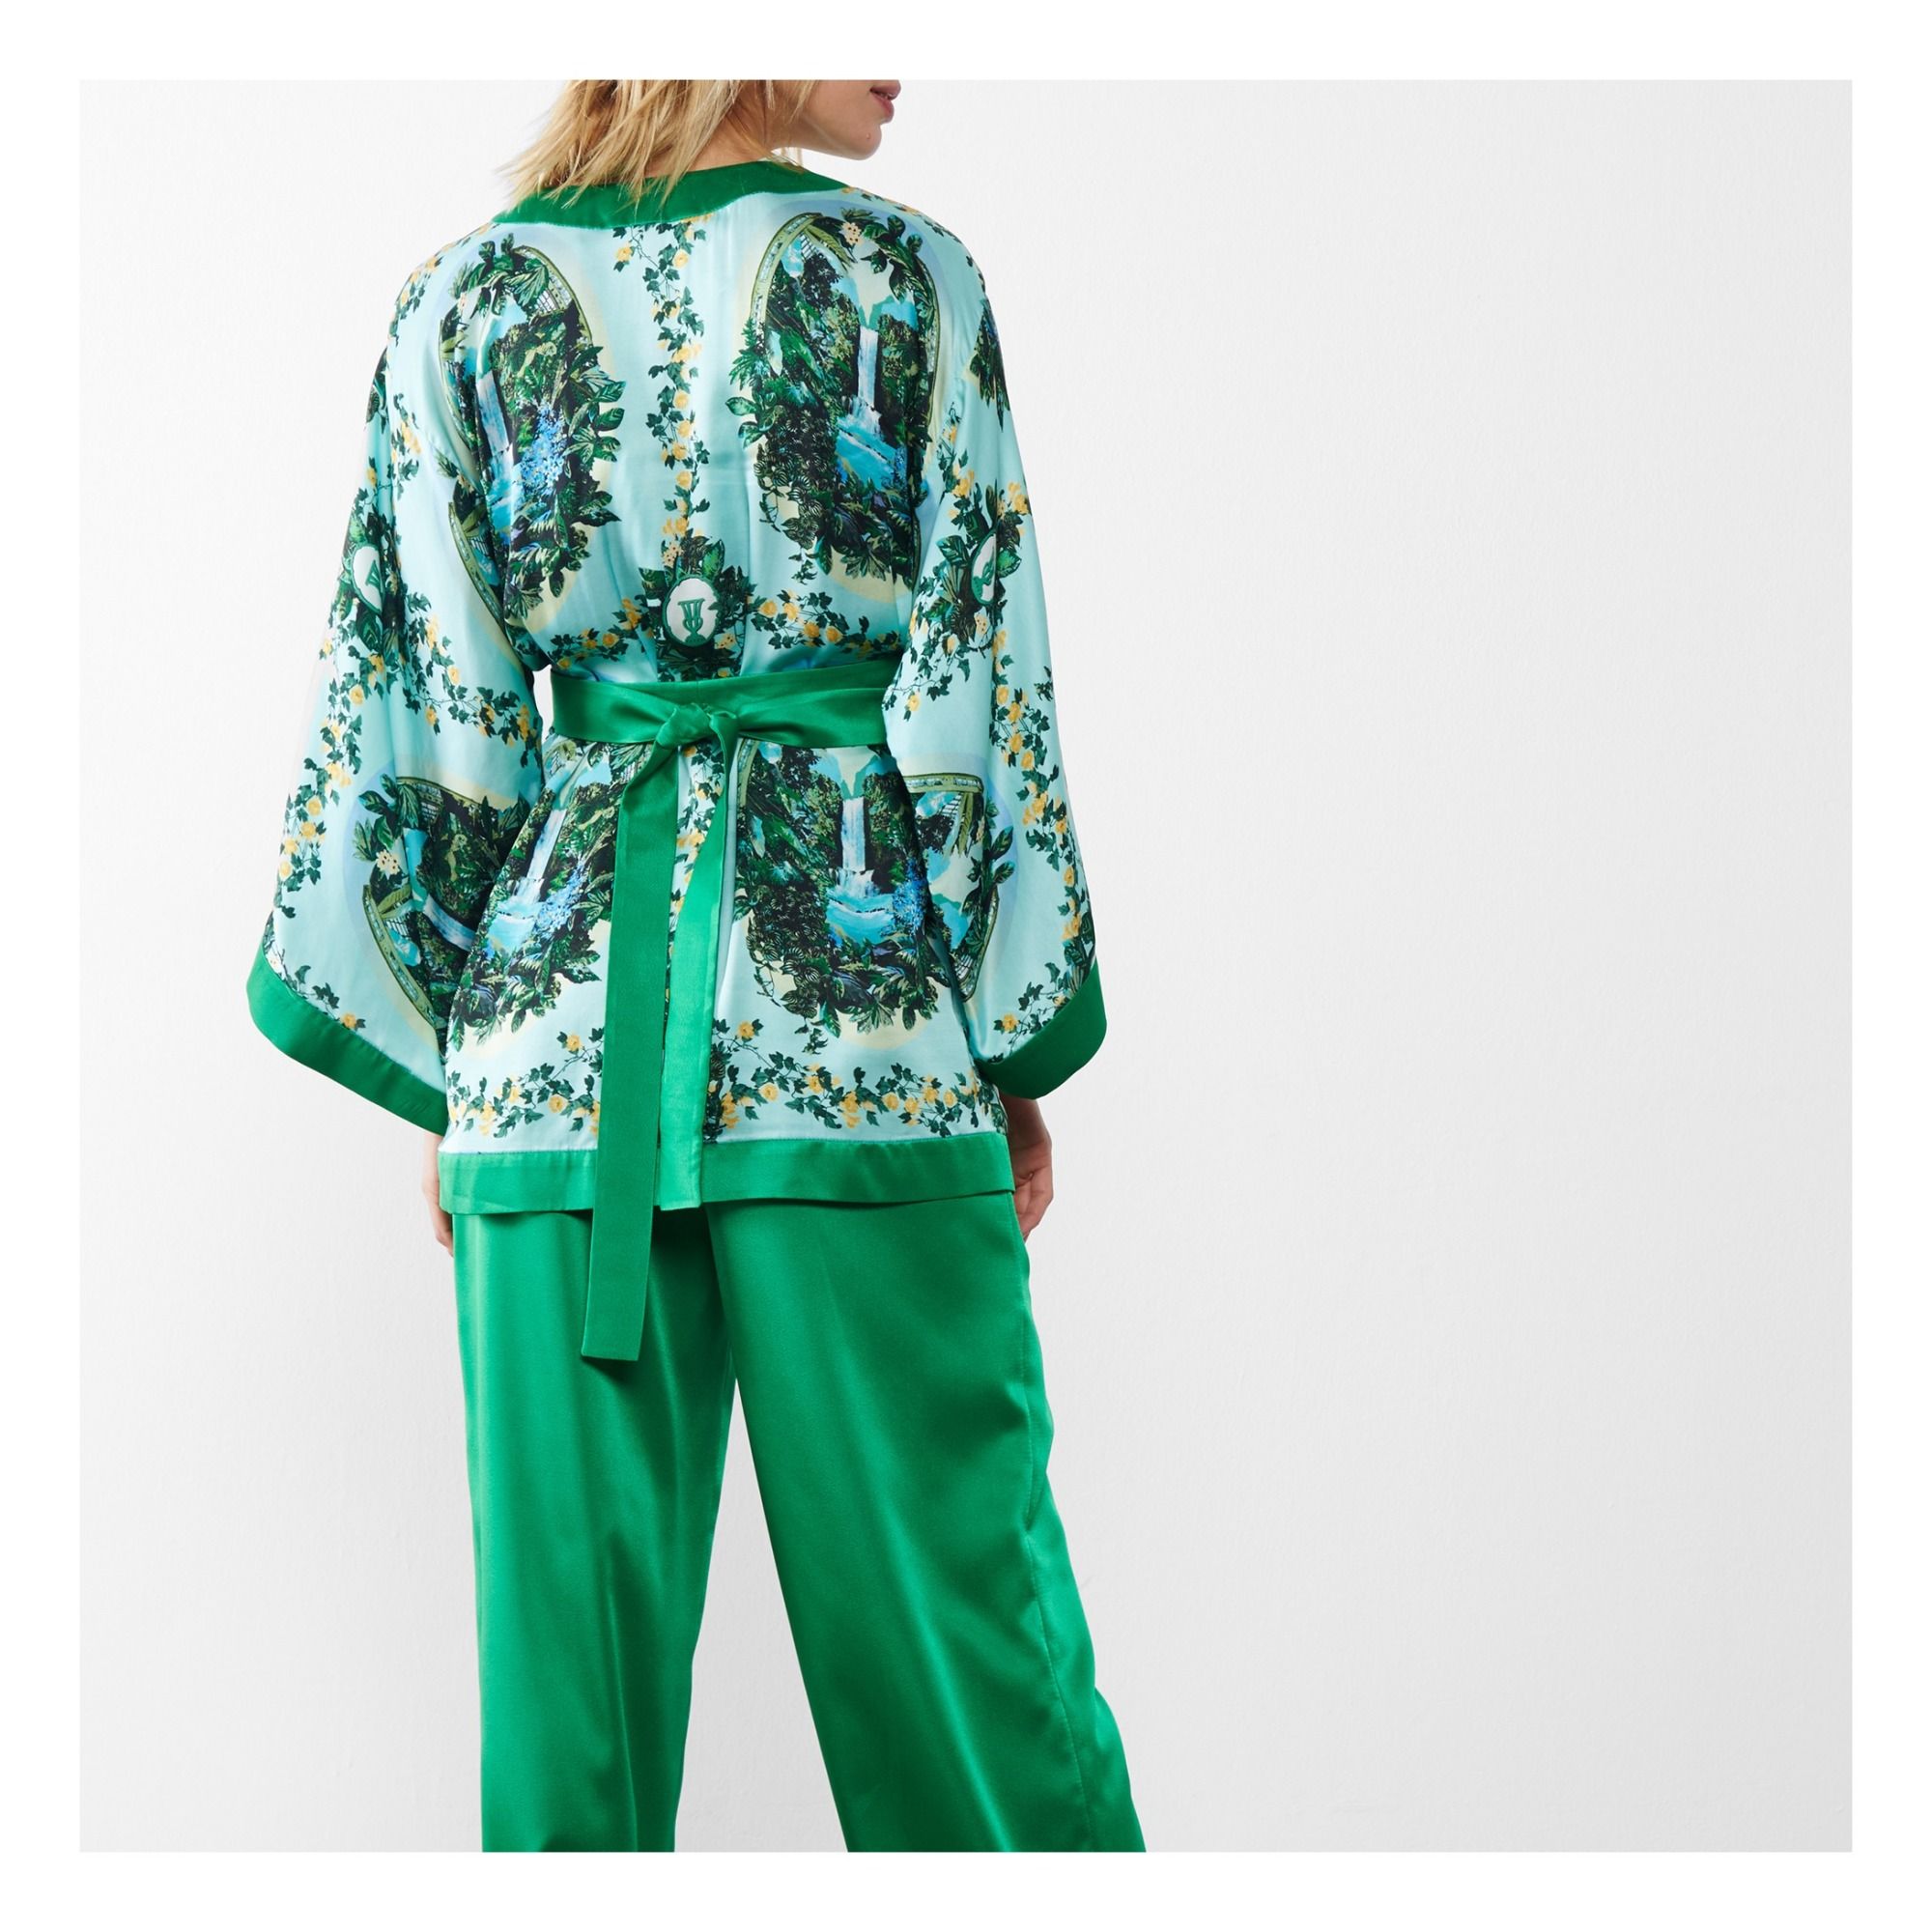 Aegle kimono Green Fête Impériale Fashion Adult